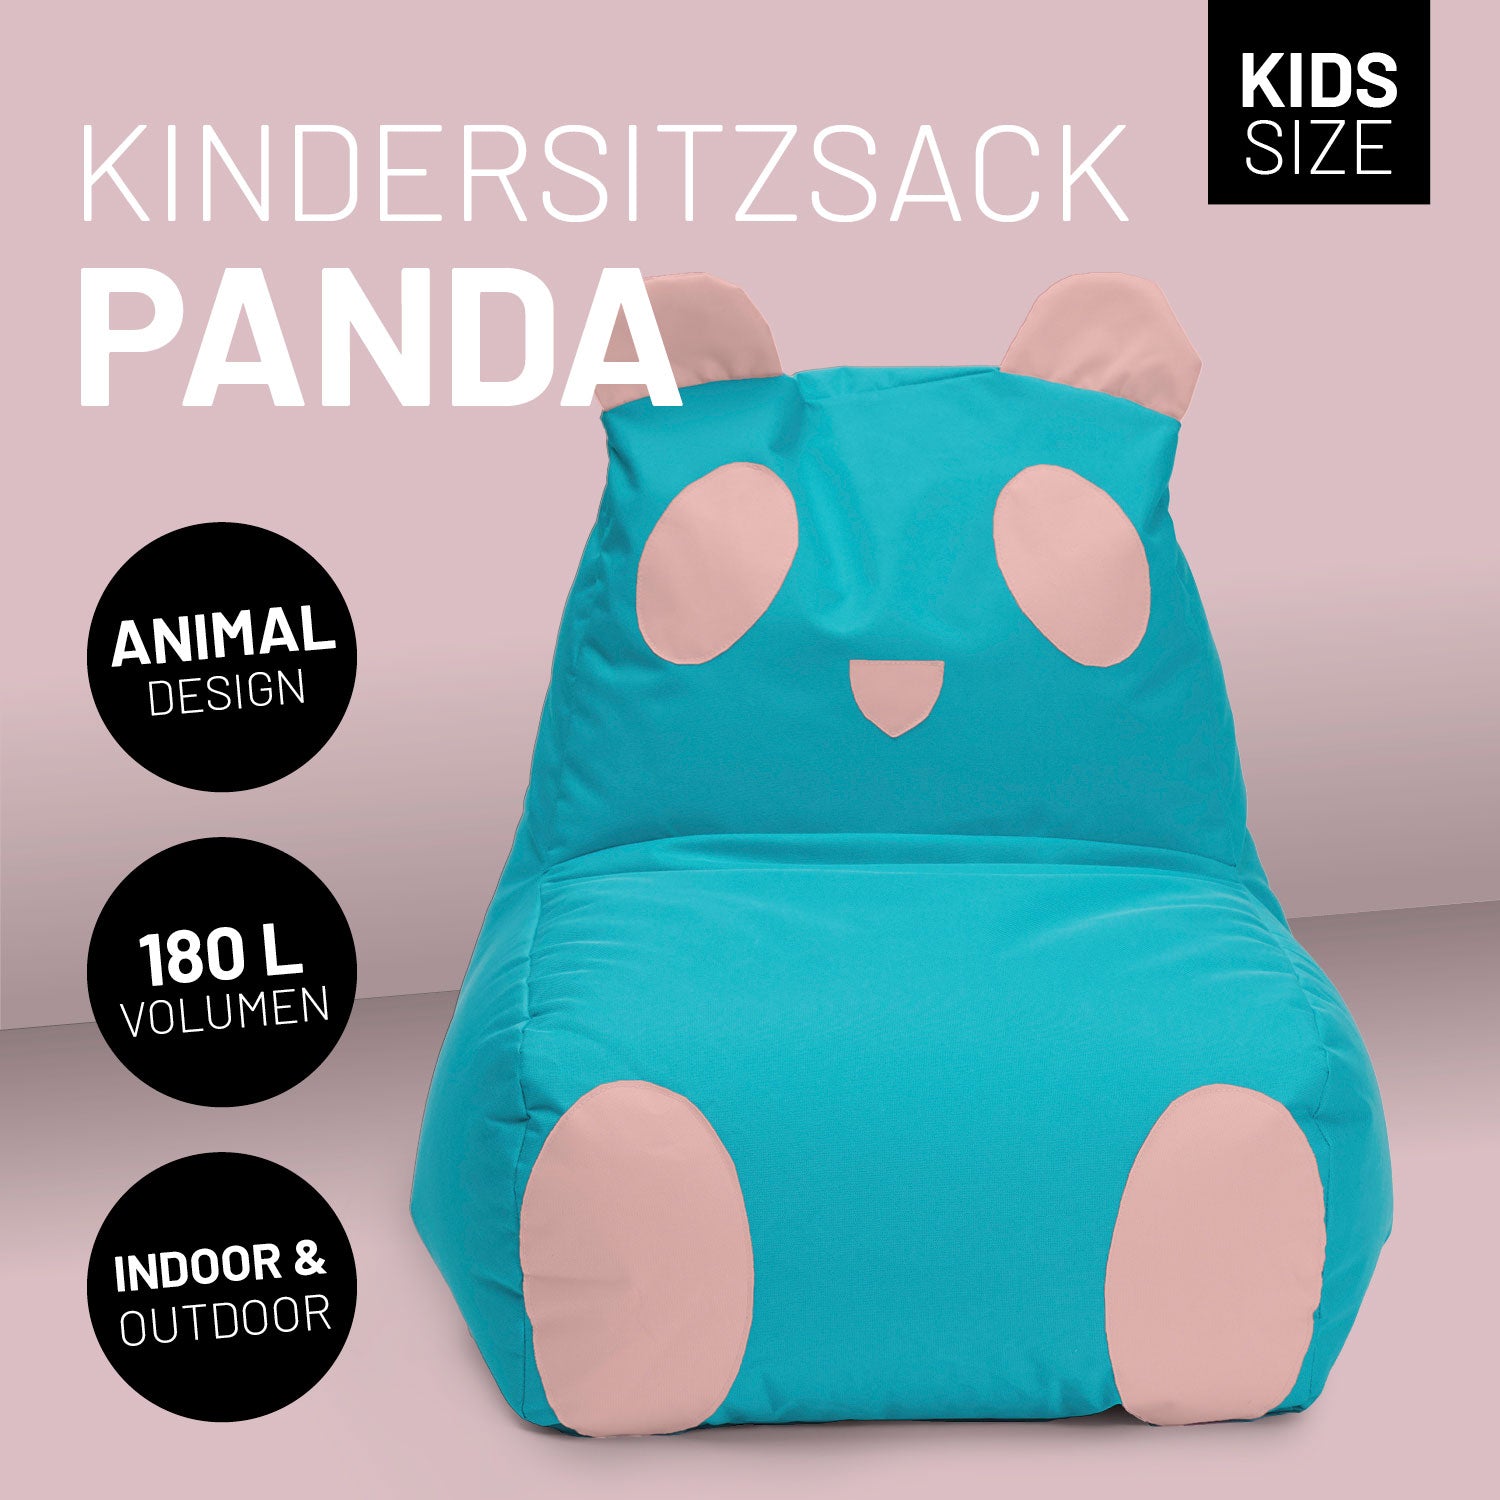 Kindersitzsack Animal Line Panda (180 L) - indoor & outdoor - Türkis/Pastell Pink